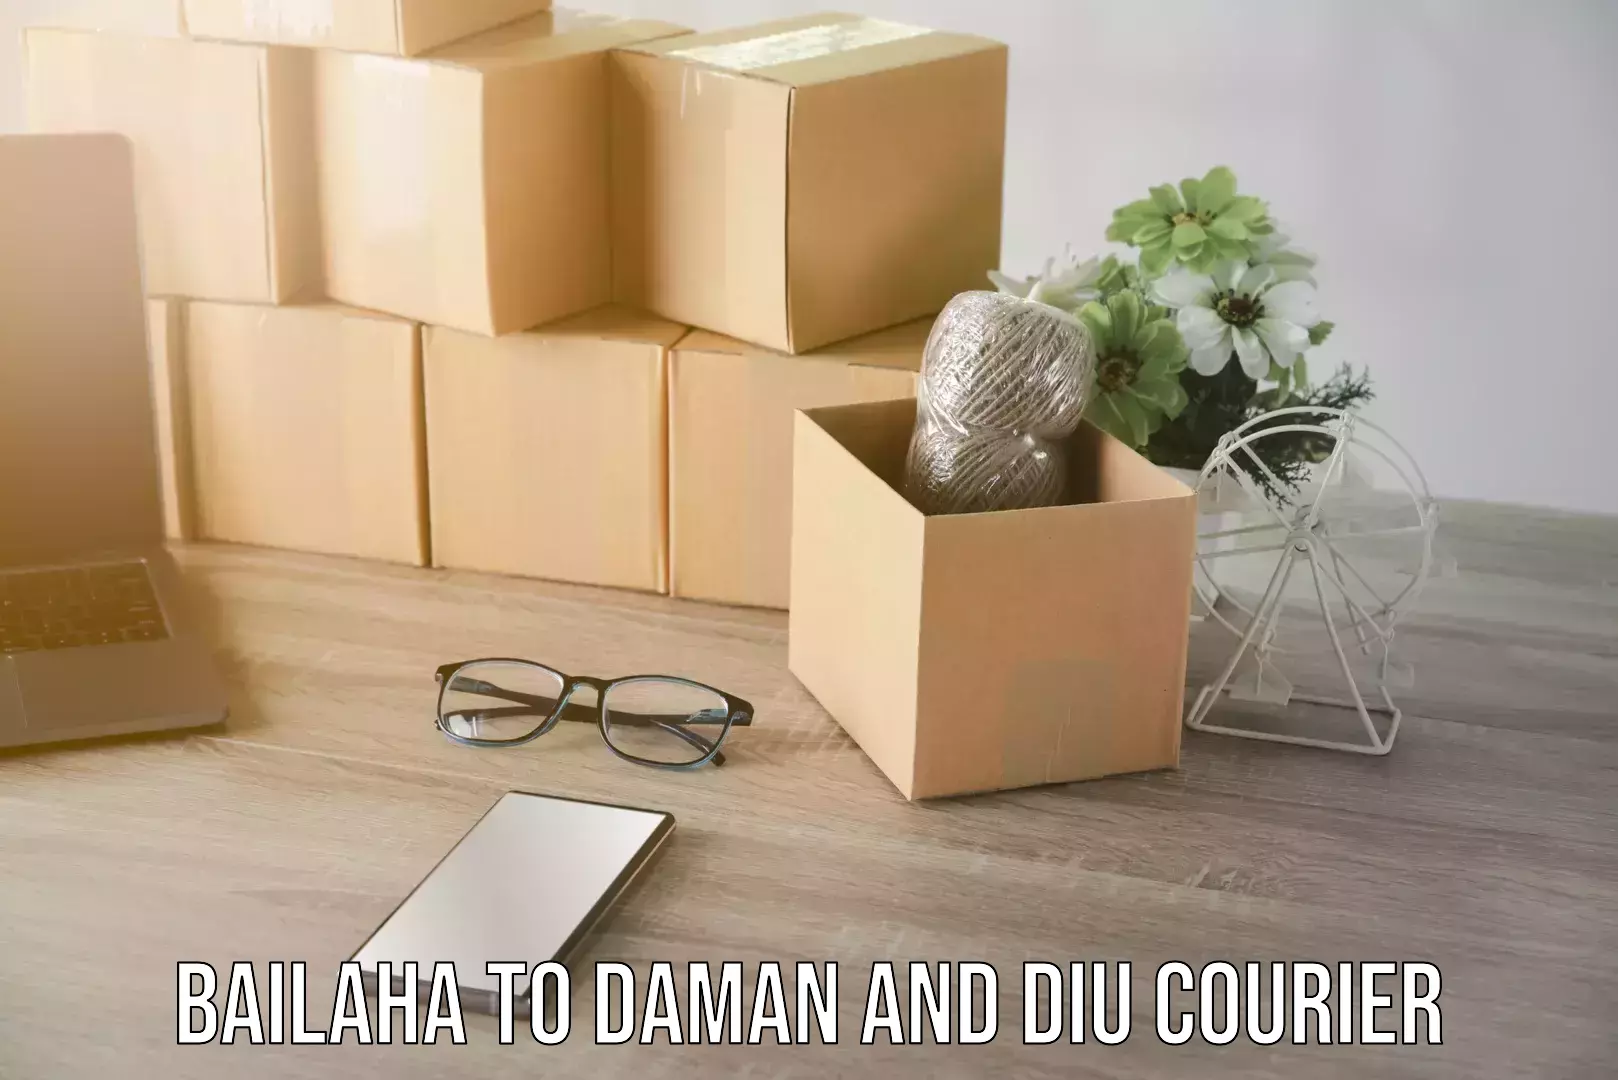 Courier service partnerships Bailaha to Daman and Diu